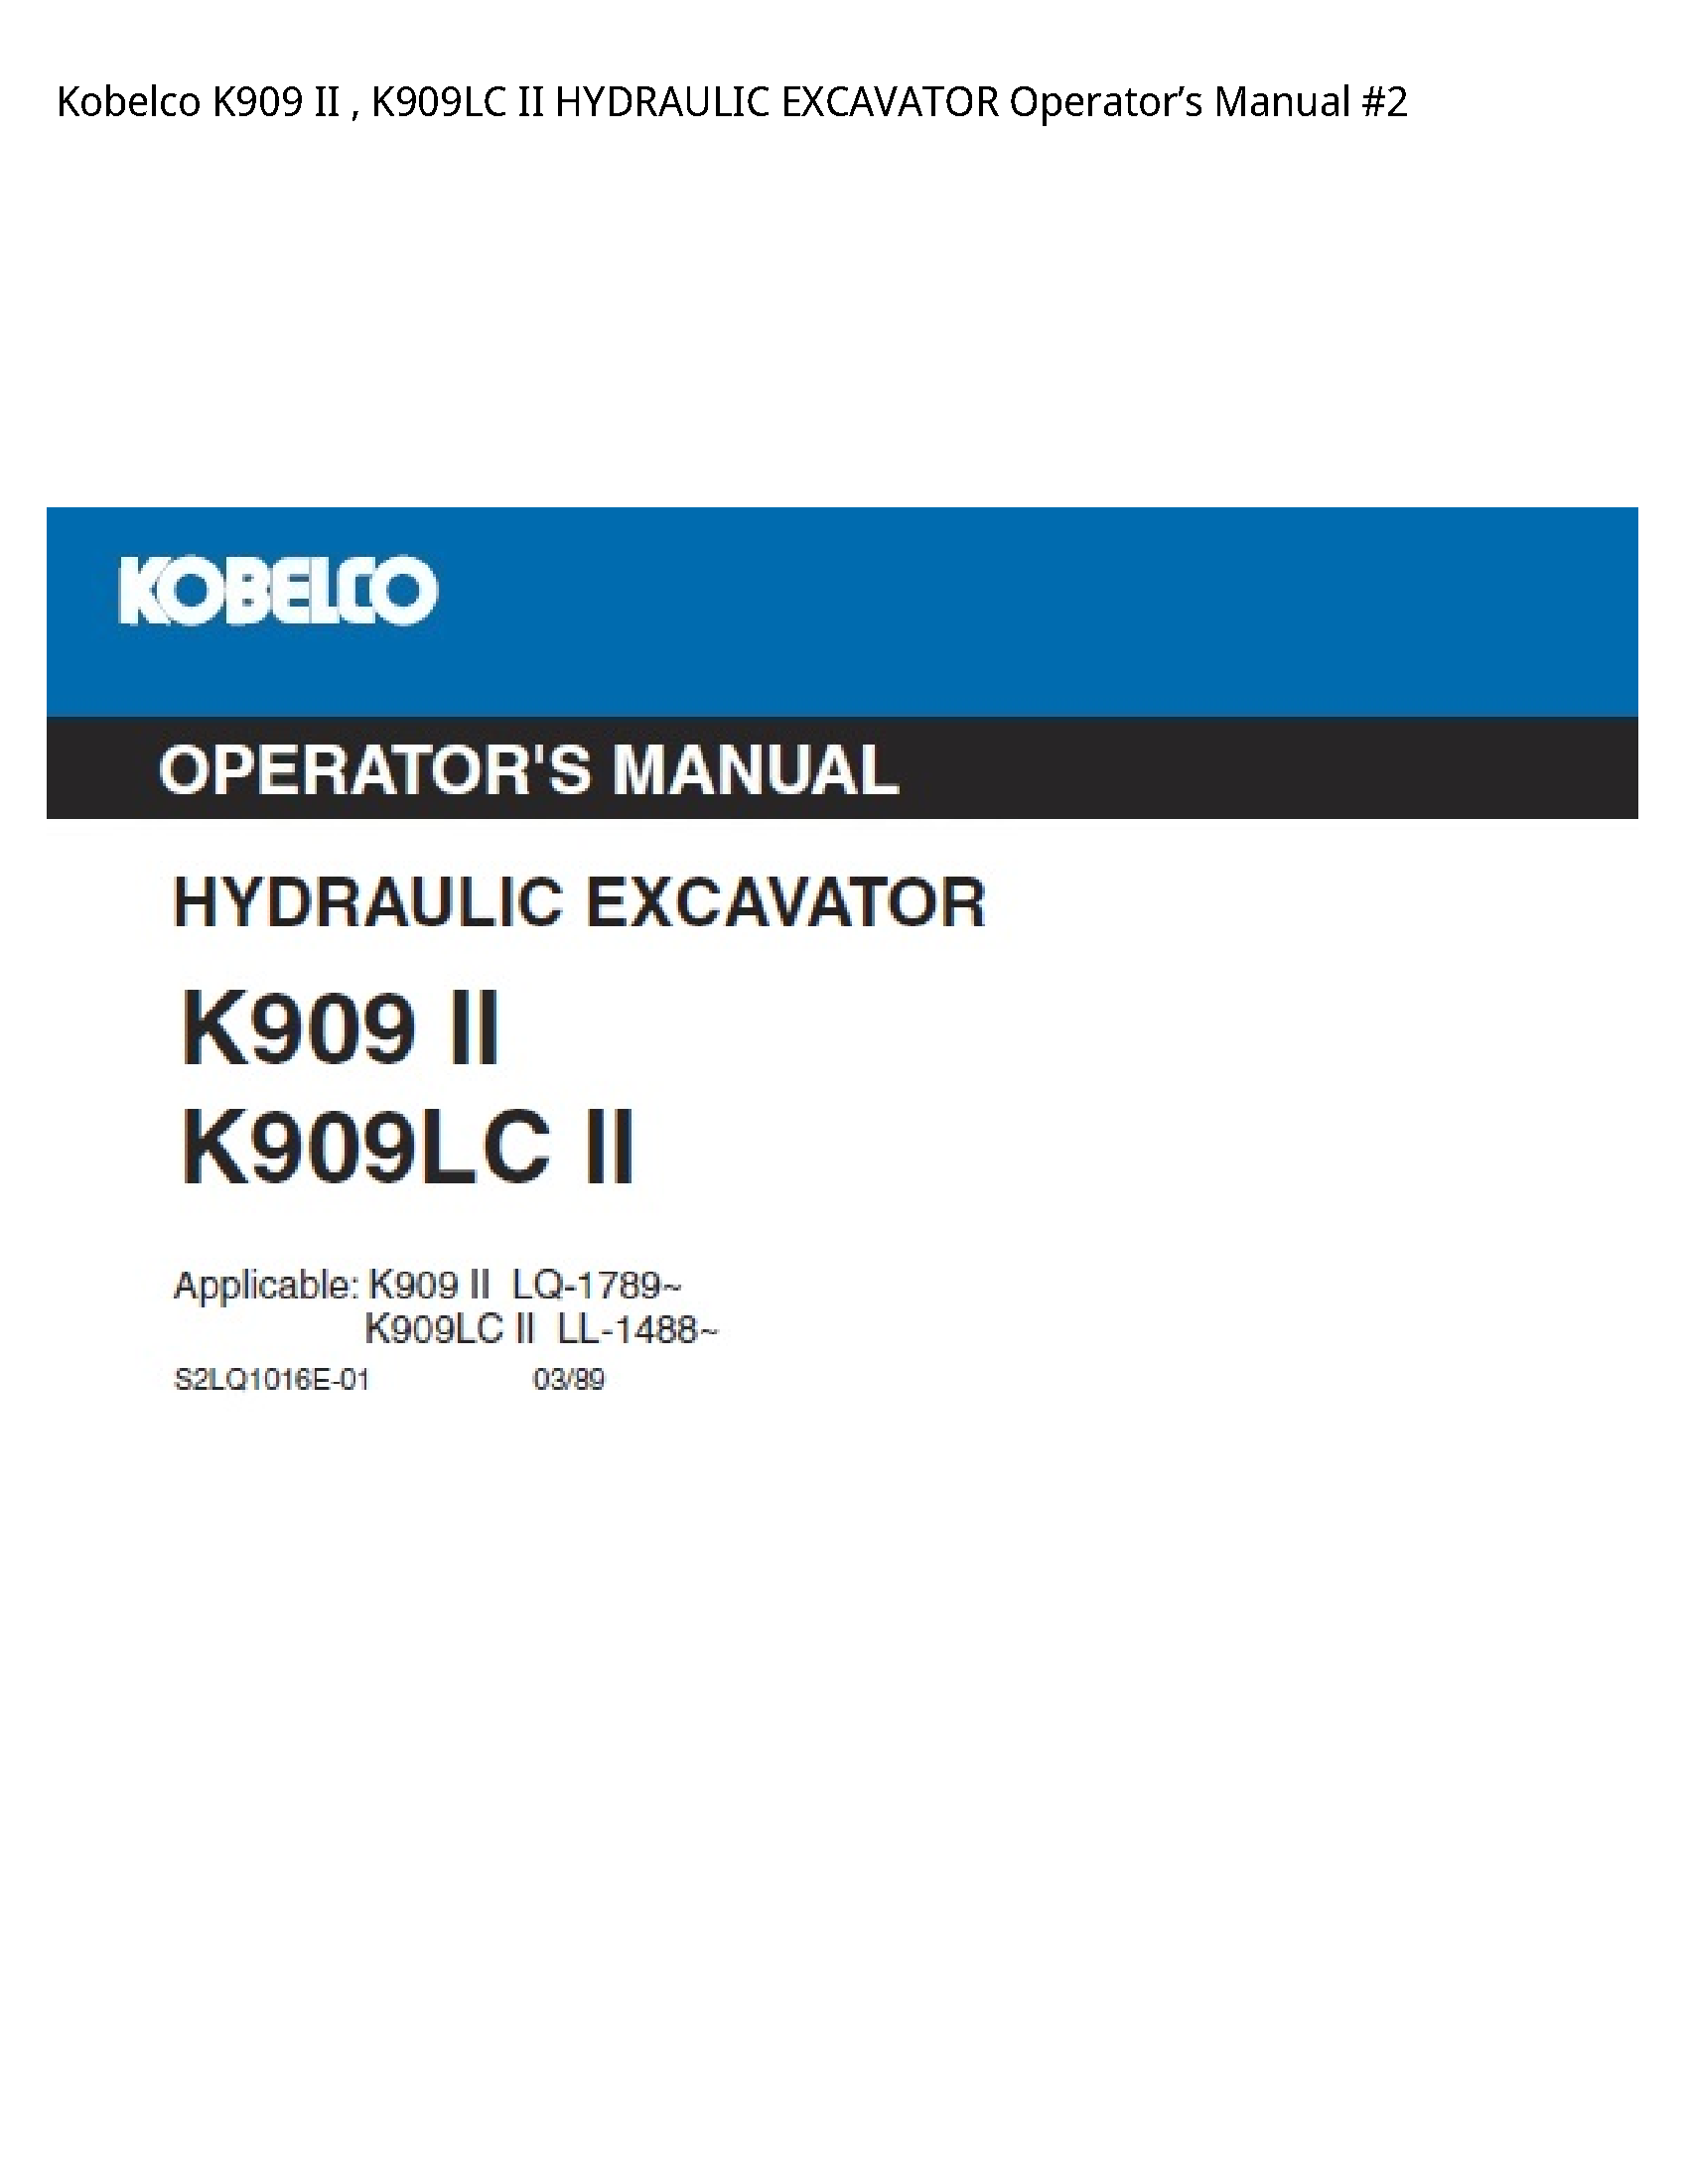 Kobelco K909 II II HYDRAULIC EXCAVATOR Operator’s manual